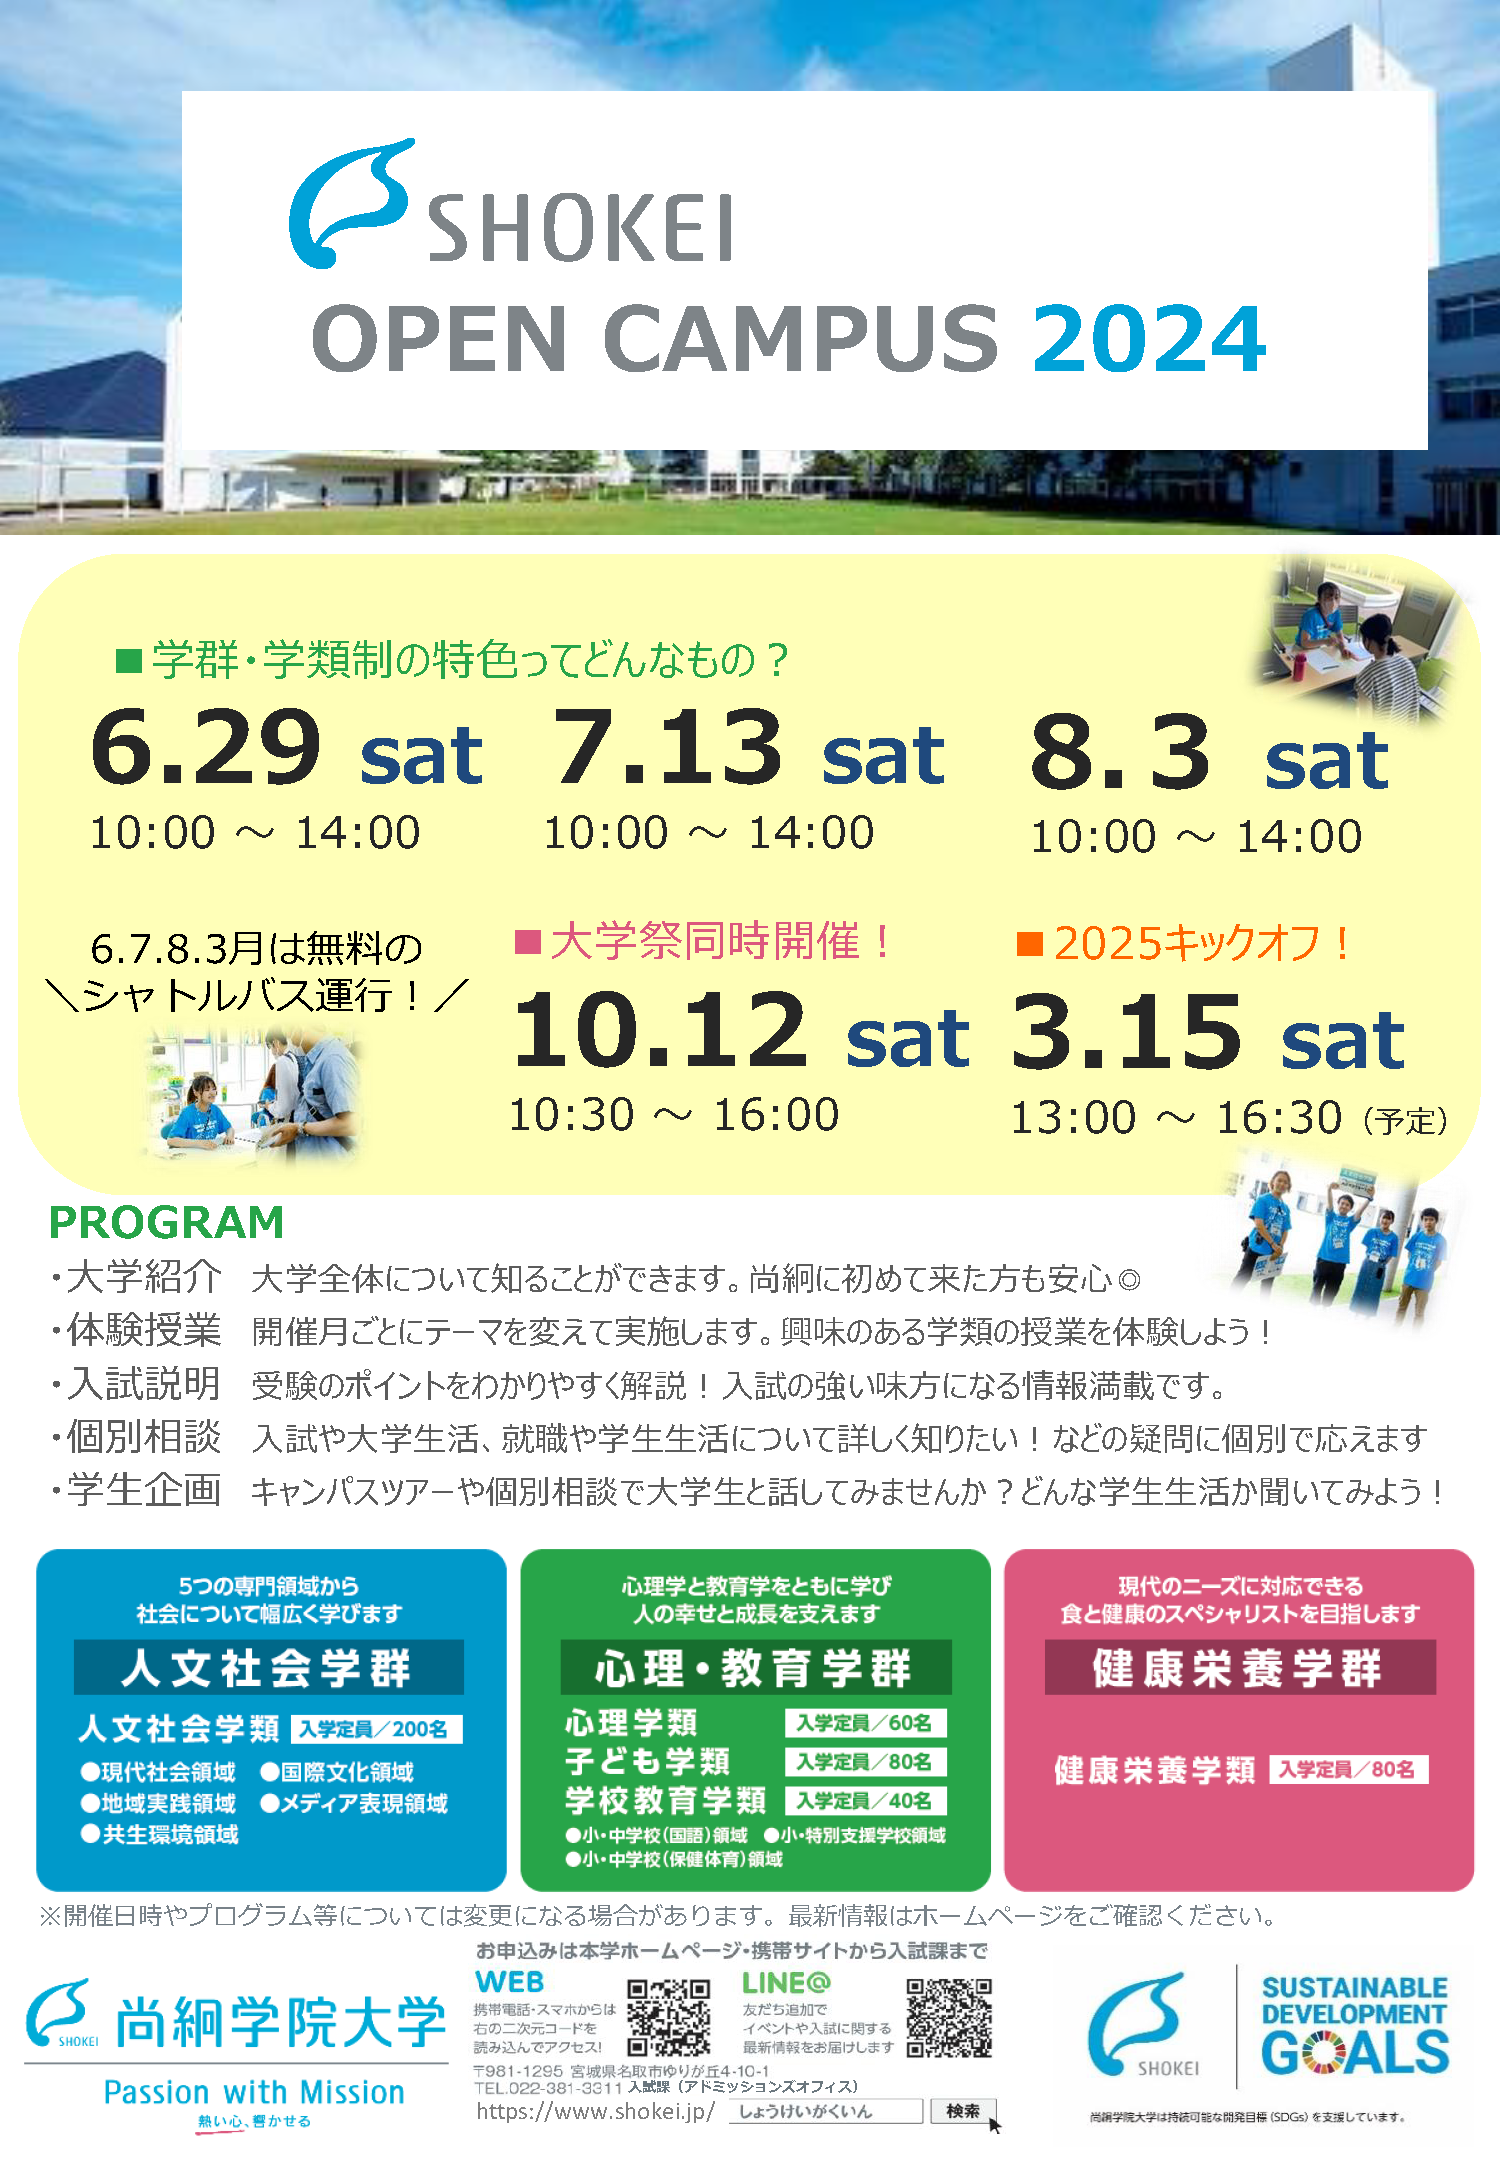 尚絅学院大学のオープンキャンパス　1・2年生対象